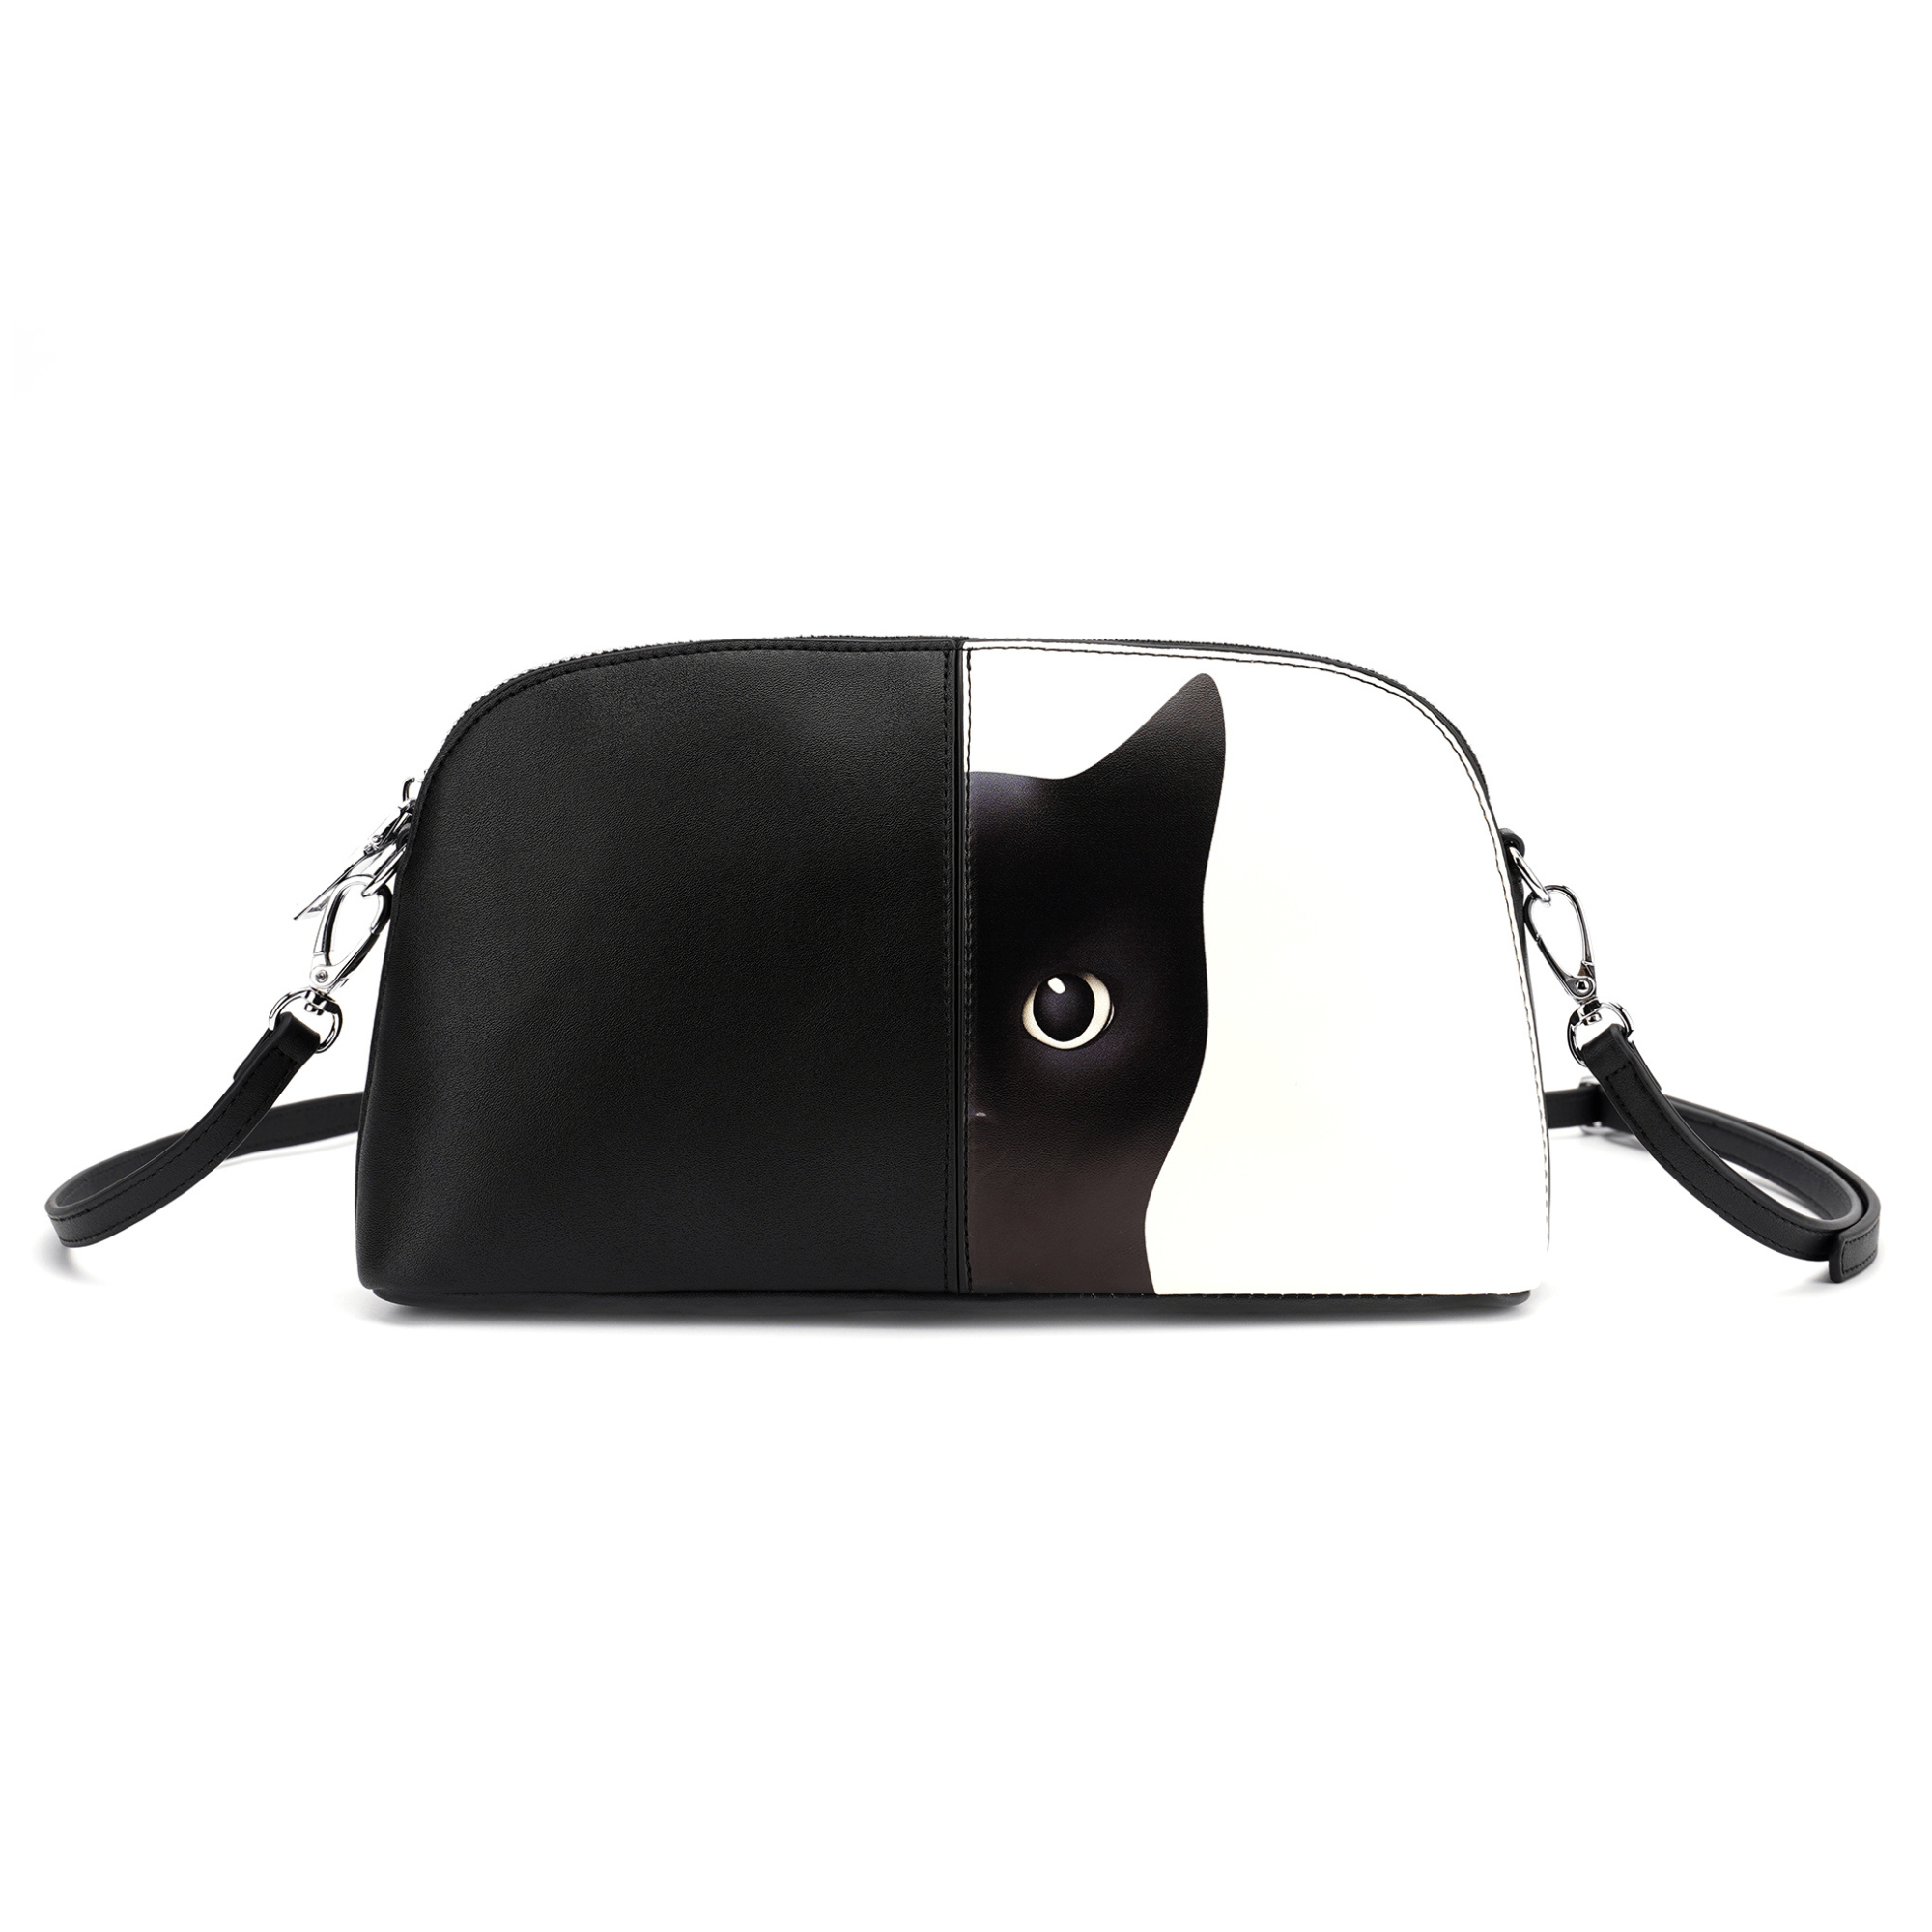 https://triple-t-studios.com/cdn/shop/products/triple-t-studios-handbags-wallets-black-mercy-black-cat-shoulder-bag-38840942756074_5000x.png?v=1704227524